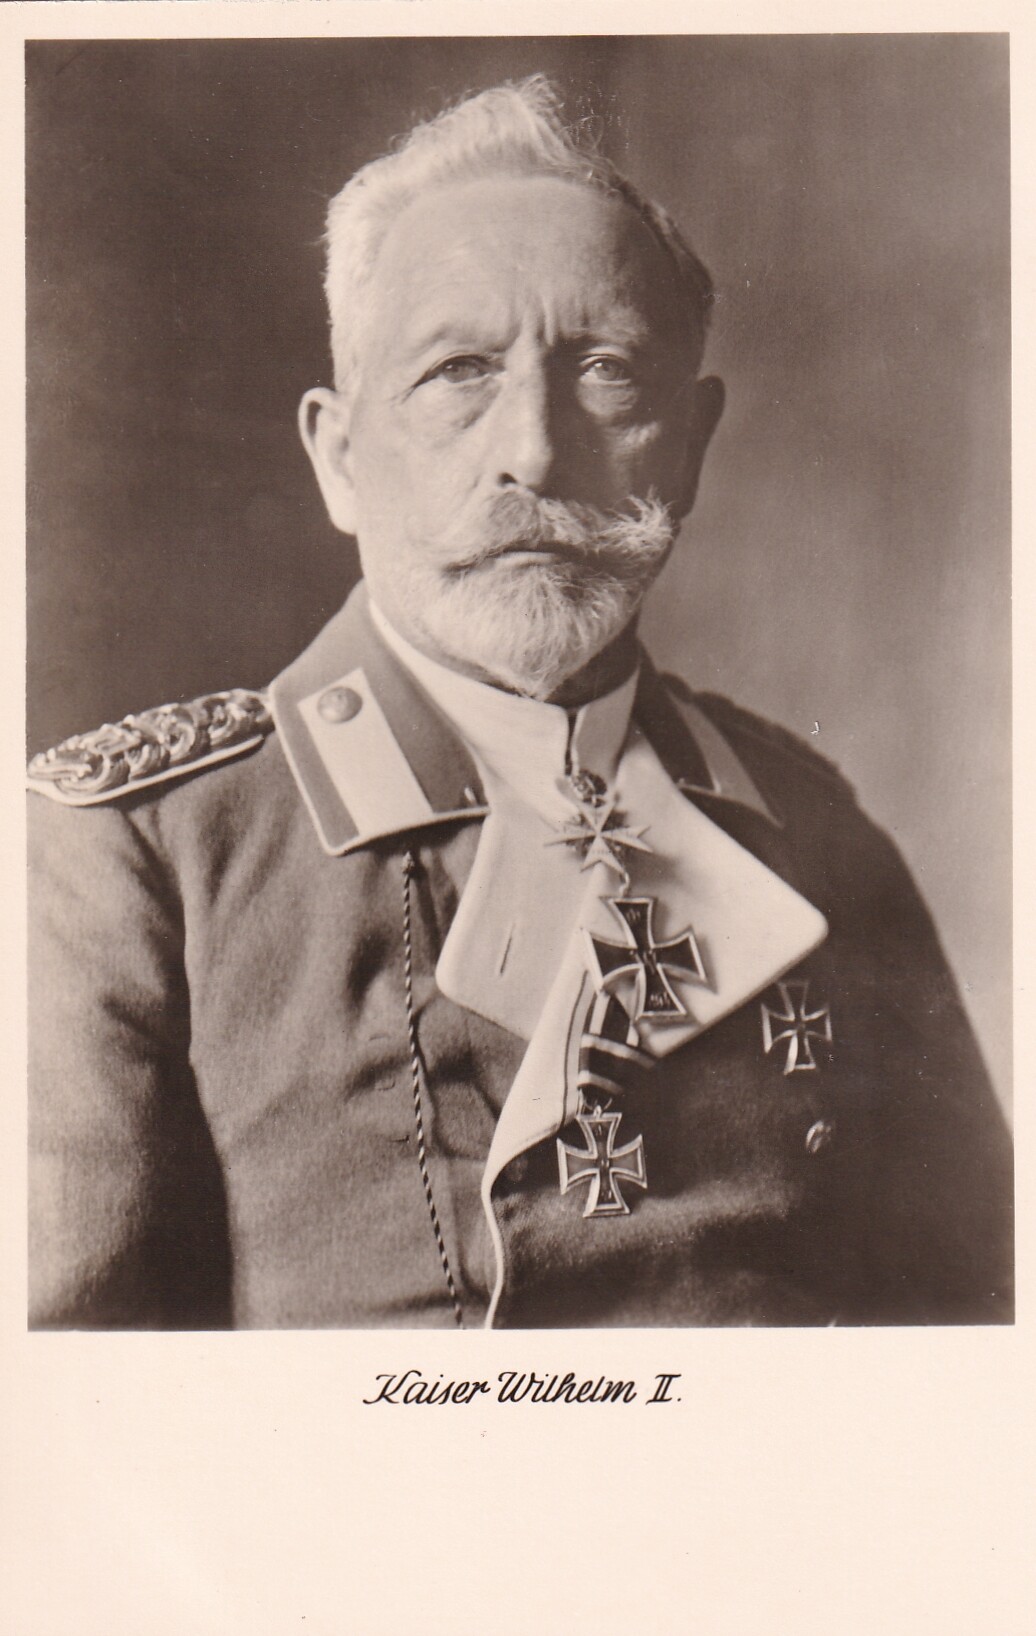 Bildpostkarte mit Foto des Ex-Kaisers Wilhelm II. (1859-1941) in Uniform im Exil, um 1930 (Schloß Wernigerode GmbH RR-F)